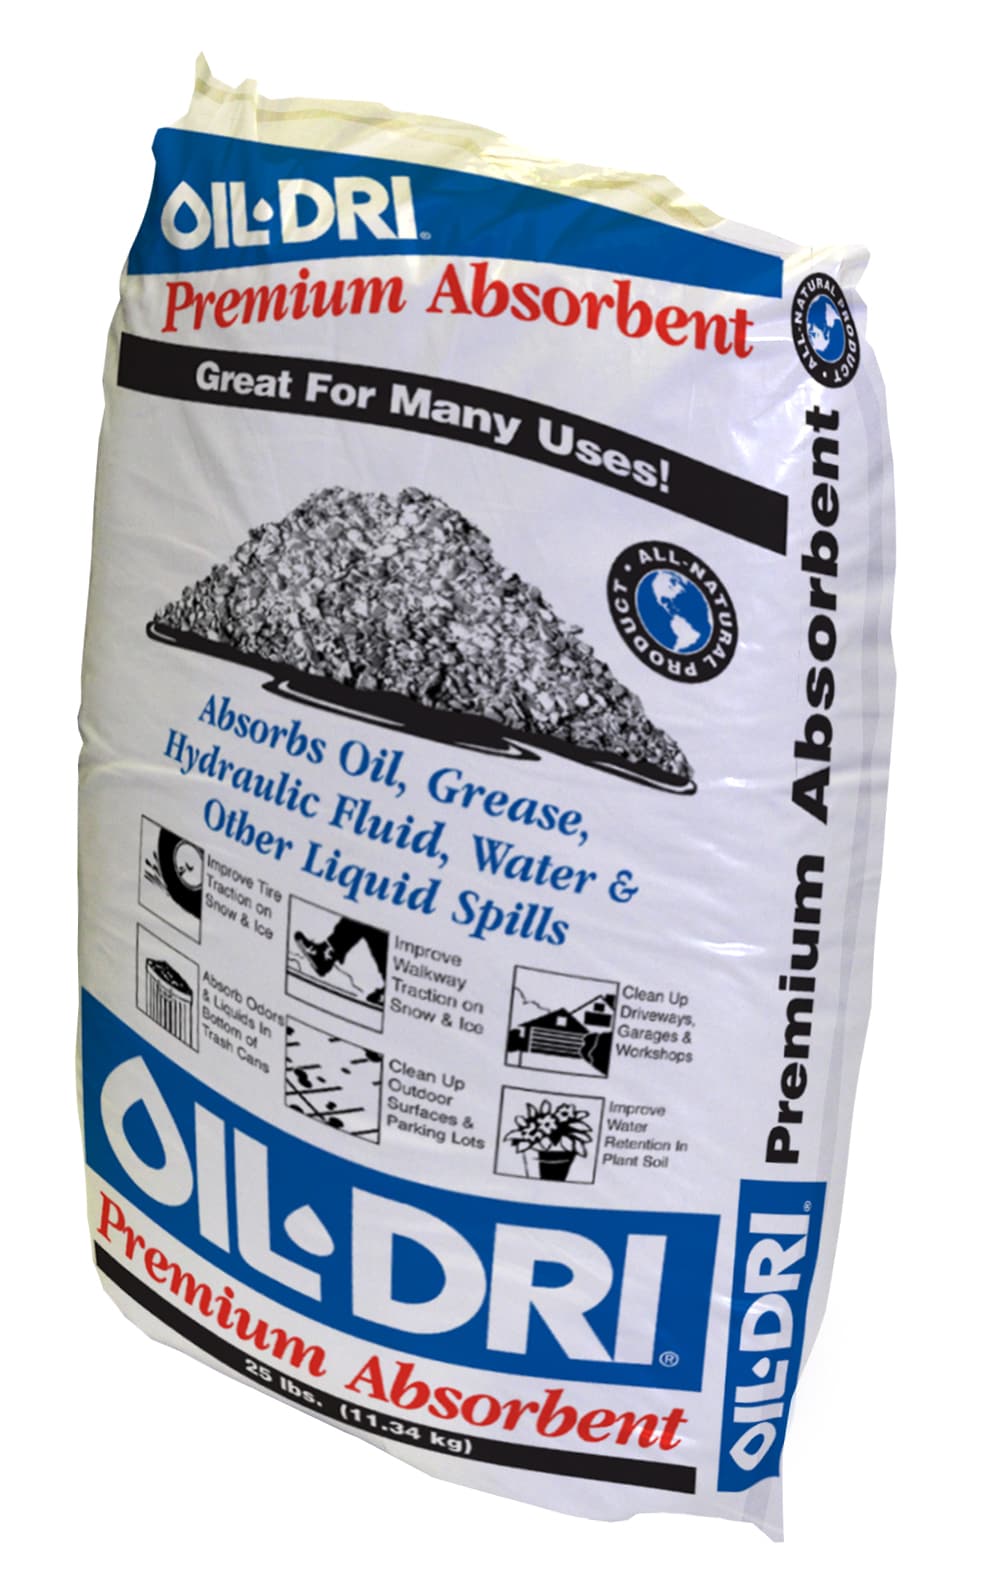 Oil-Dri Premium Absorbent, 25 lbs